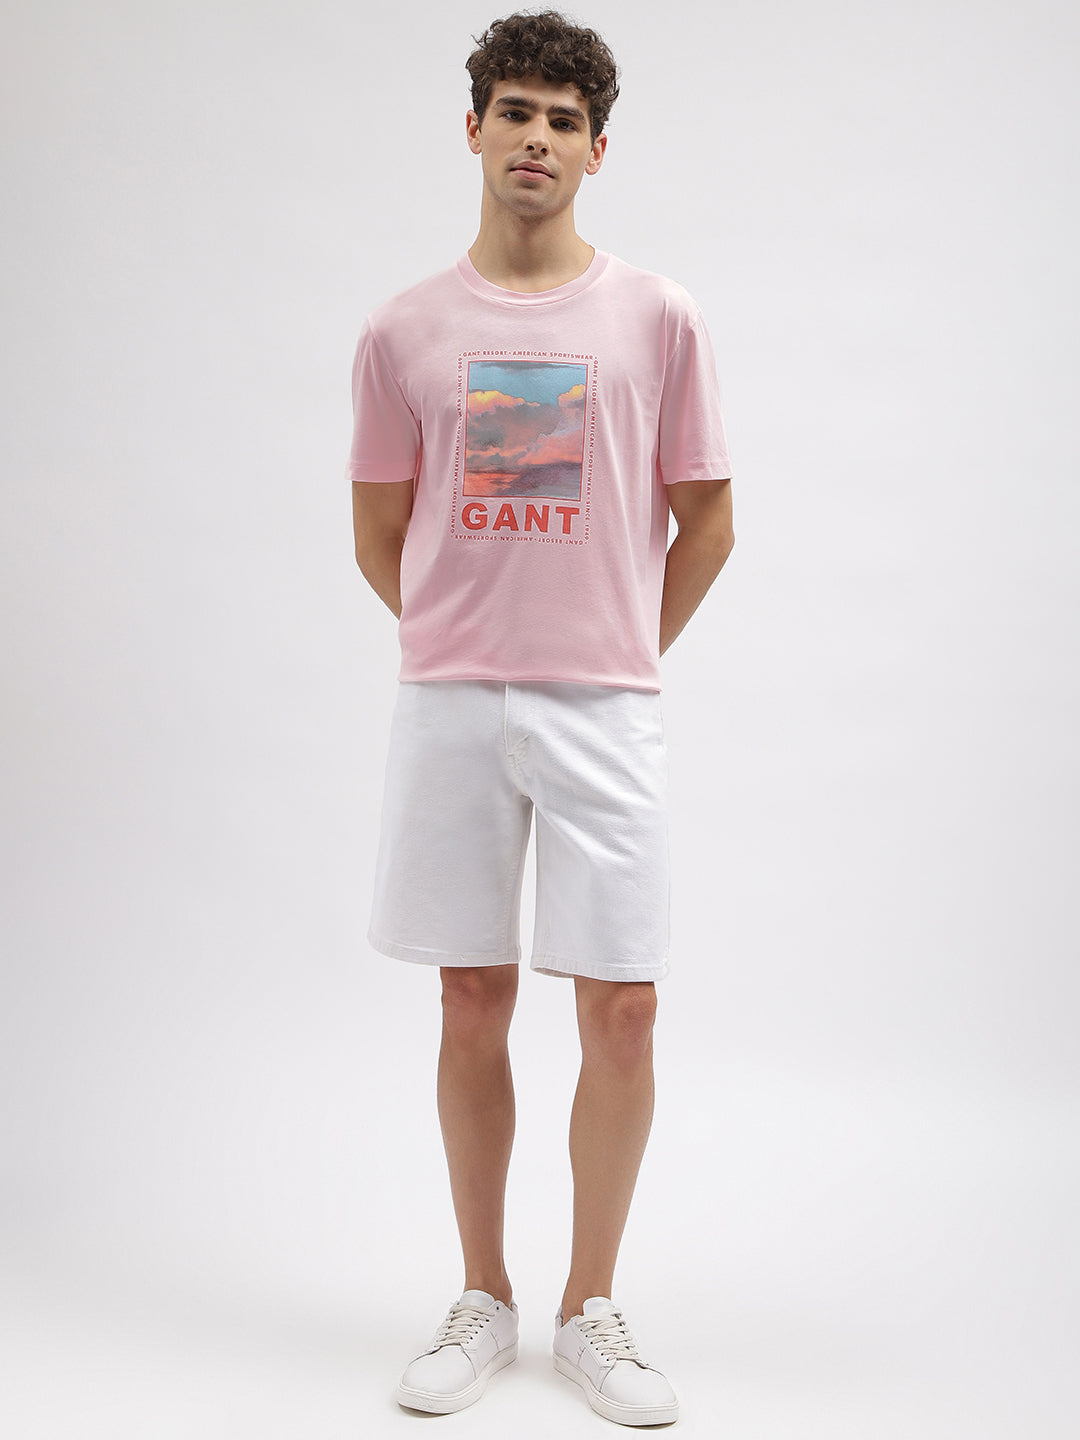 Gant Men Pink Printed Round Neck Short Sleeves T-Shirt